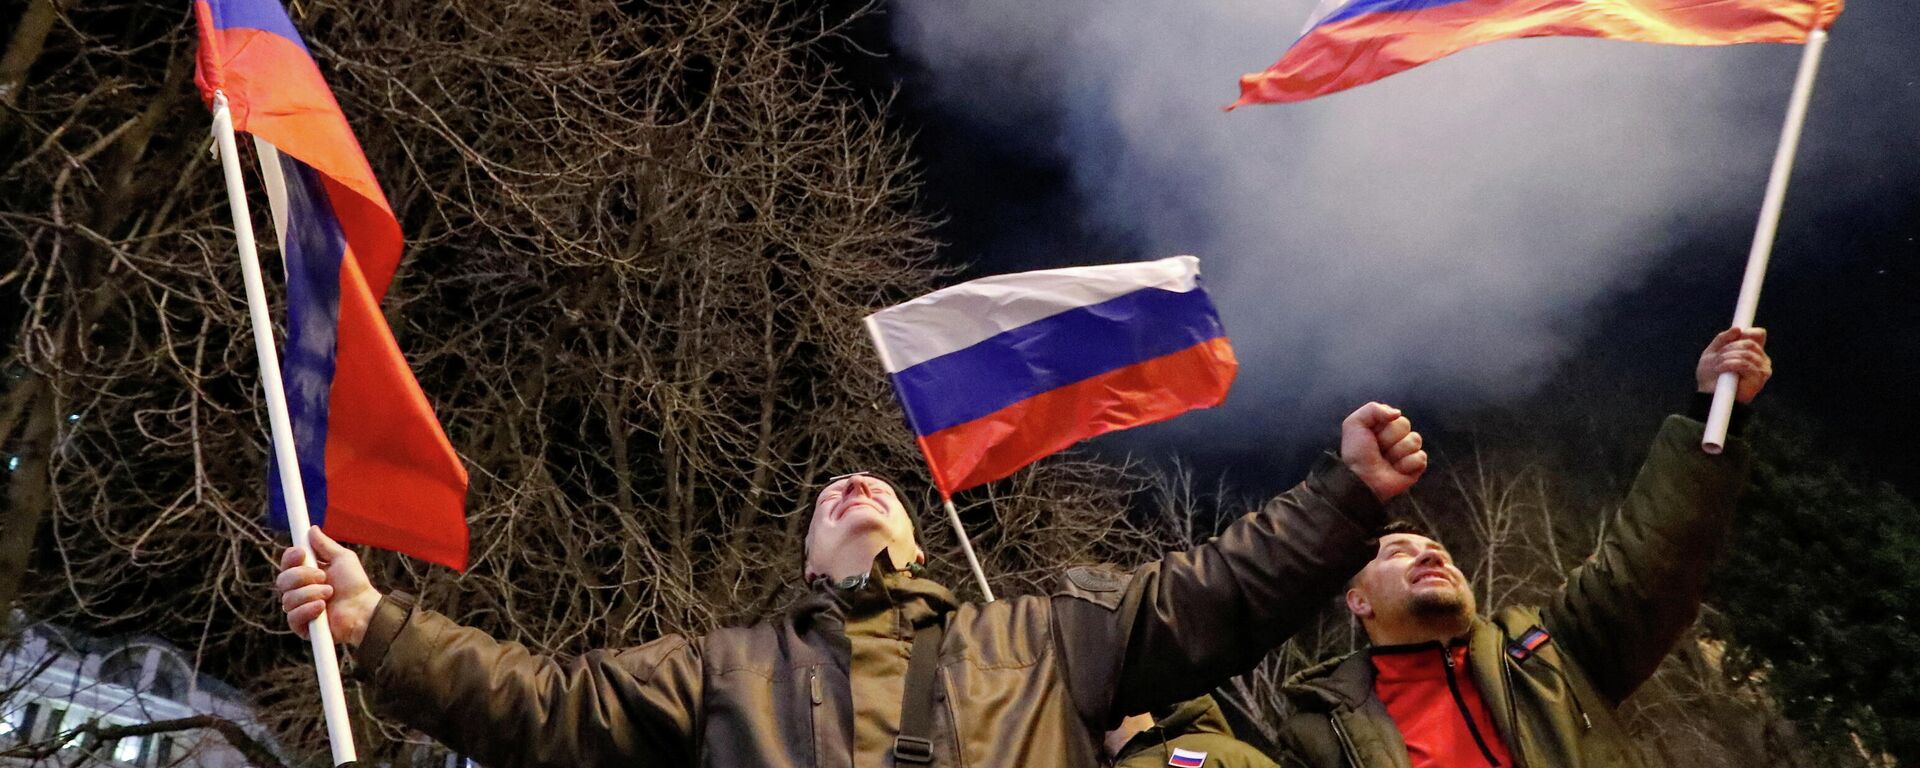 Pessoas com bandeiras russas lançam fogos de artifício nas ruas de Donetsk após Rússia ter reconhecido a independência das repúblicas de Donbass, 21 de fevereiro de 2022 - Sputnik Brasil, 1920, 24.02.2022